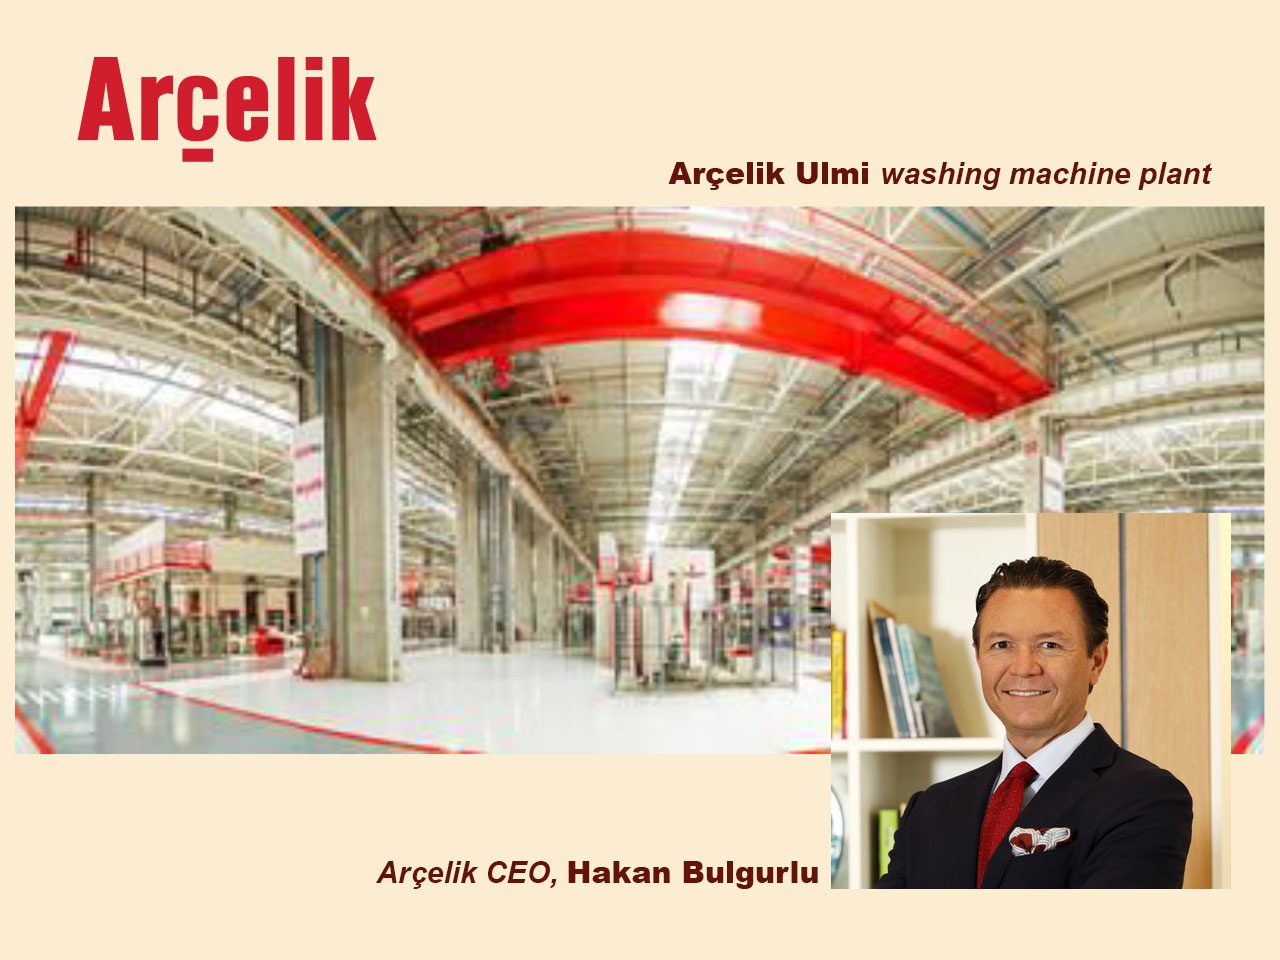 Arçelik :  belle reconnaissance méritée pour le groupe turc, dont l’usine d’Ulmi (Roumanie), est reconnue « usine phare du développement durable » par le Forum économique mondial  (WEF)